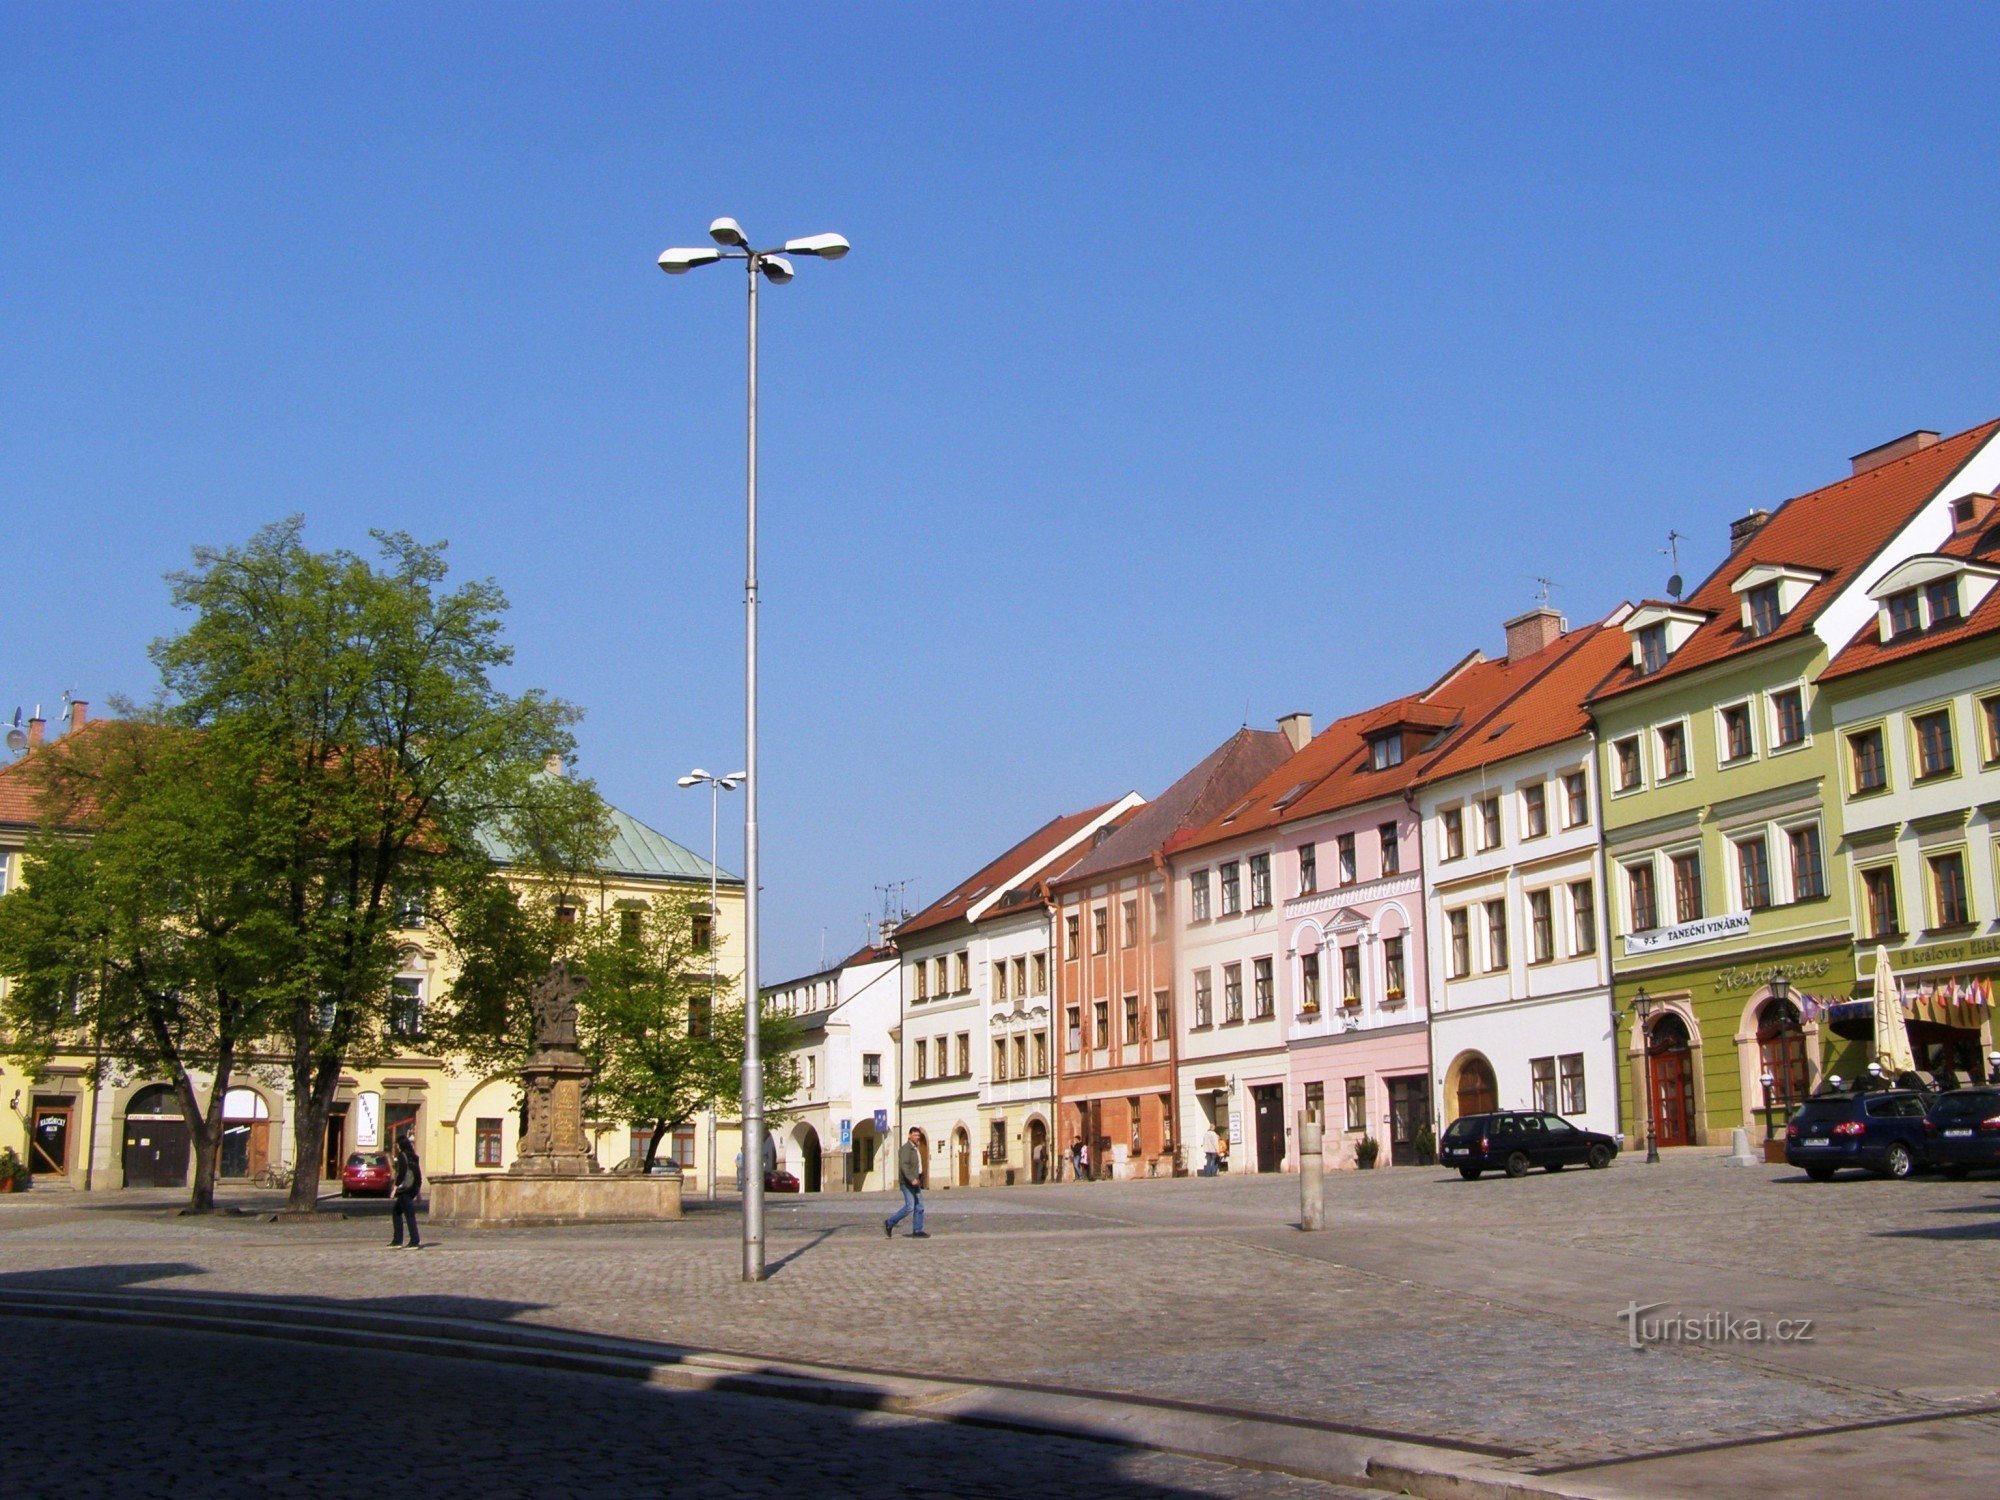 Hradec Králové - Mali trg